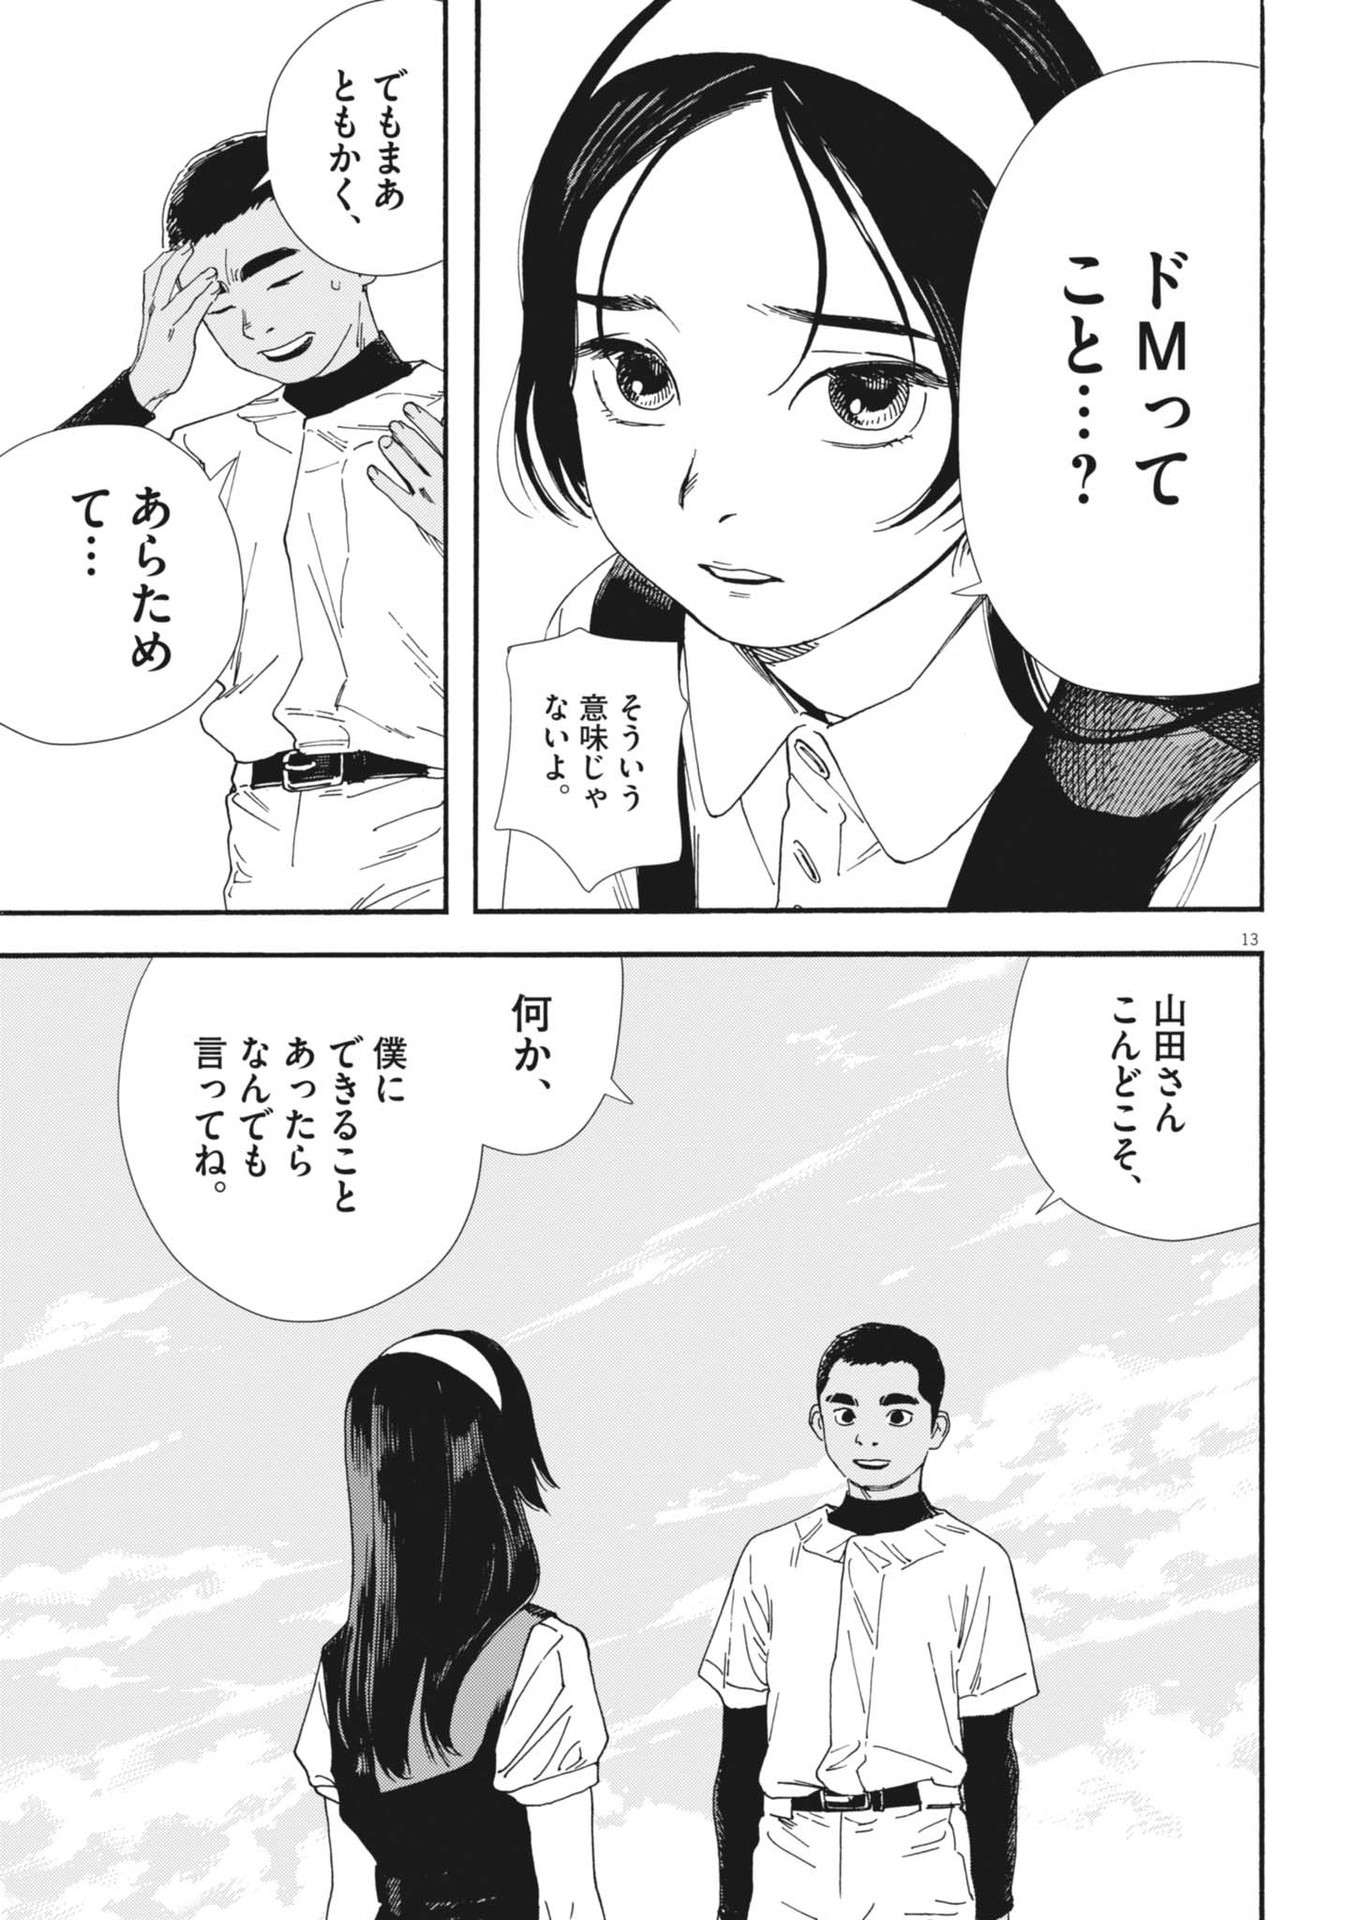 Hoshino-kun, Shitagatte! - Chapter 11 - Page 13